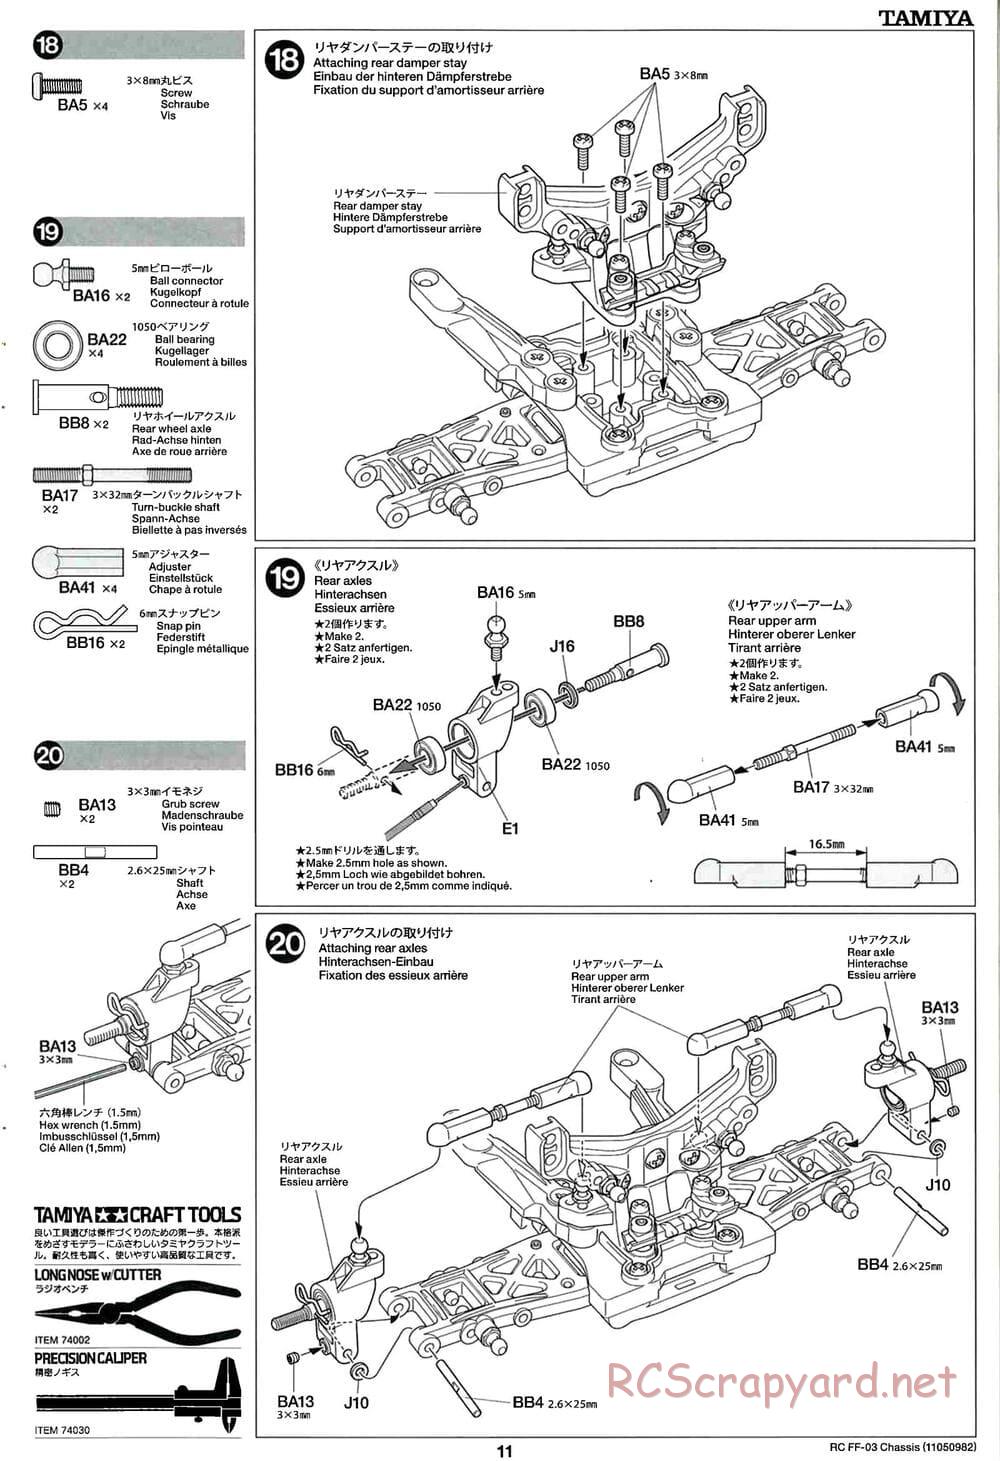 Tamiya - Honda Accord Aero Custom - FF-03 Chassis - Manual - Page 11